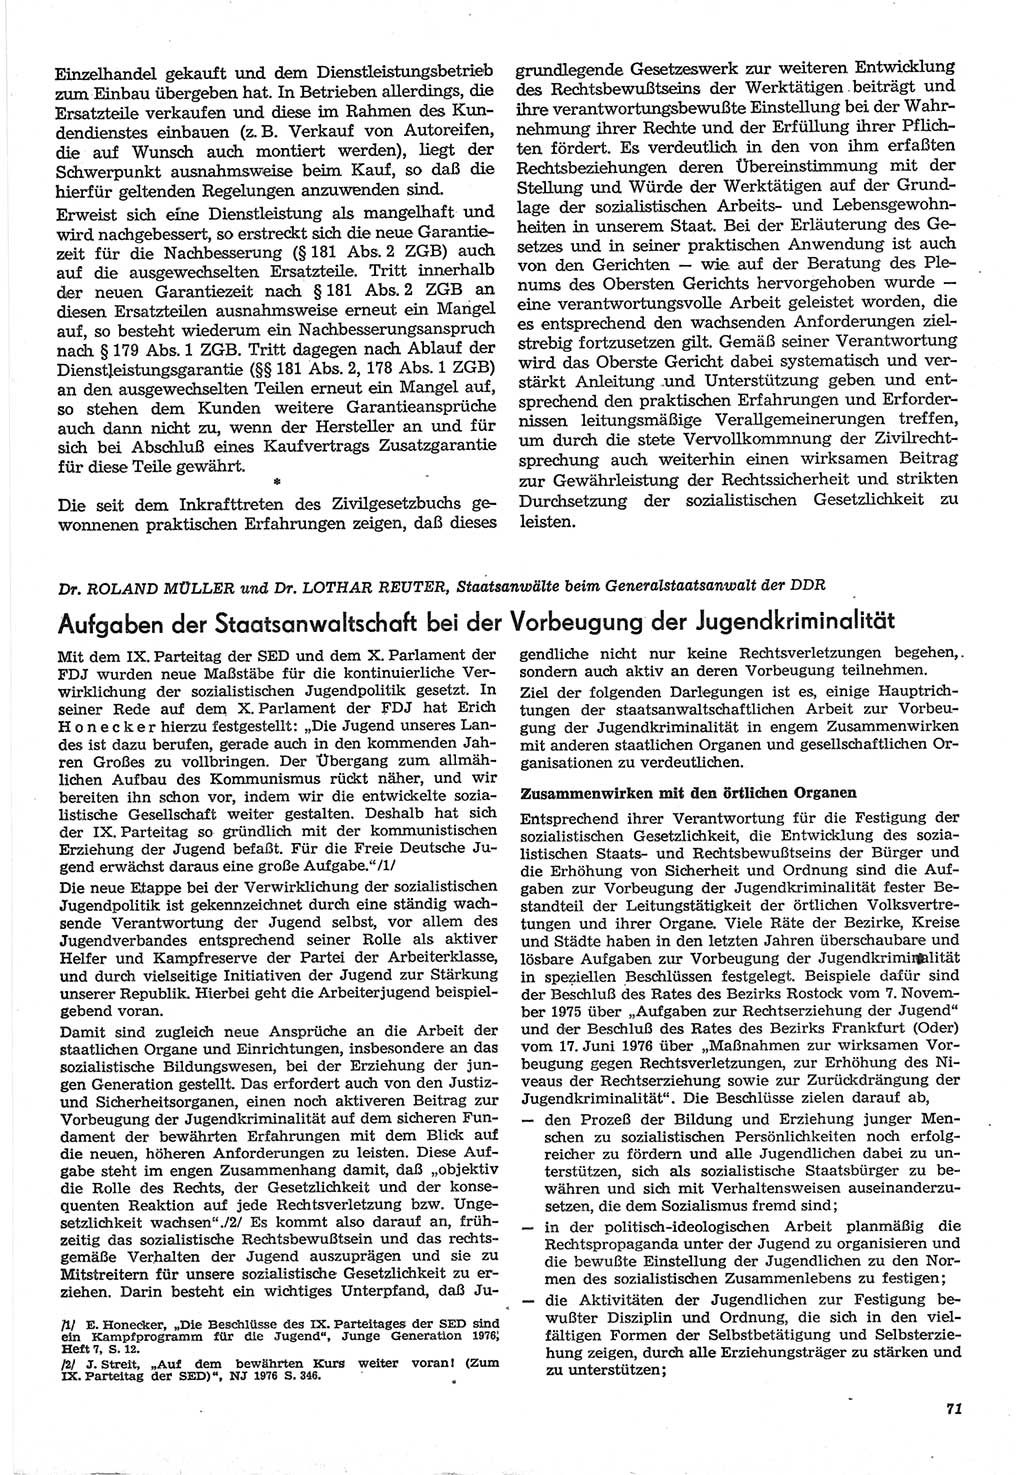 Neue Justiz (NJ), Zeitschrift für Recht und Rechtswissenschaft-Zeitschrift, sozialistisches Recht und Gesetzlichkeit, 31. Jahrgang 1977, Seite 71 (NJ DDR 1977, S. 71)